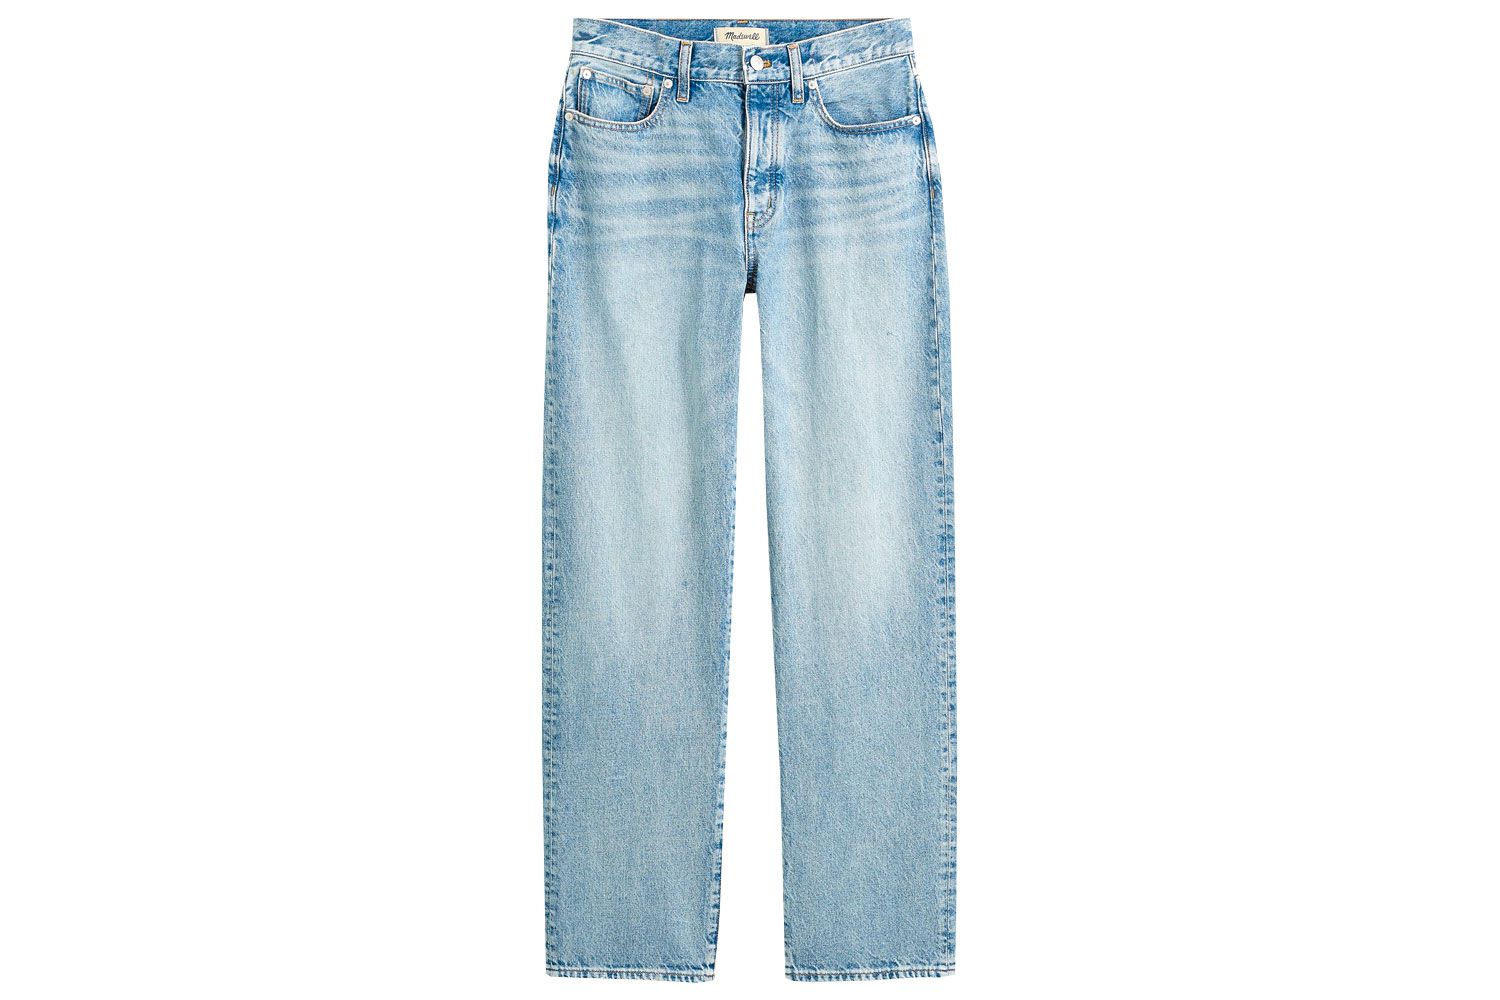 Jeans diretos Madewell Petite com pouca patrimônio